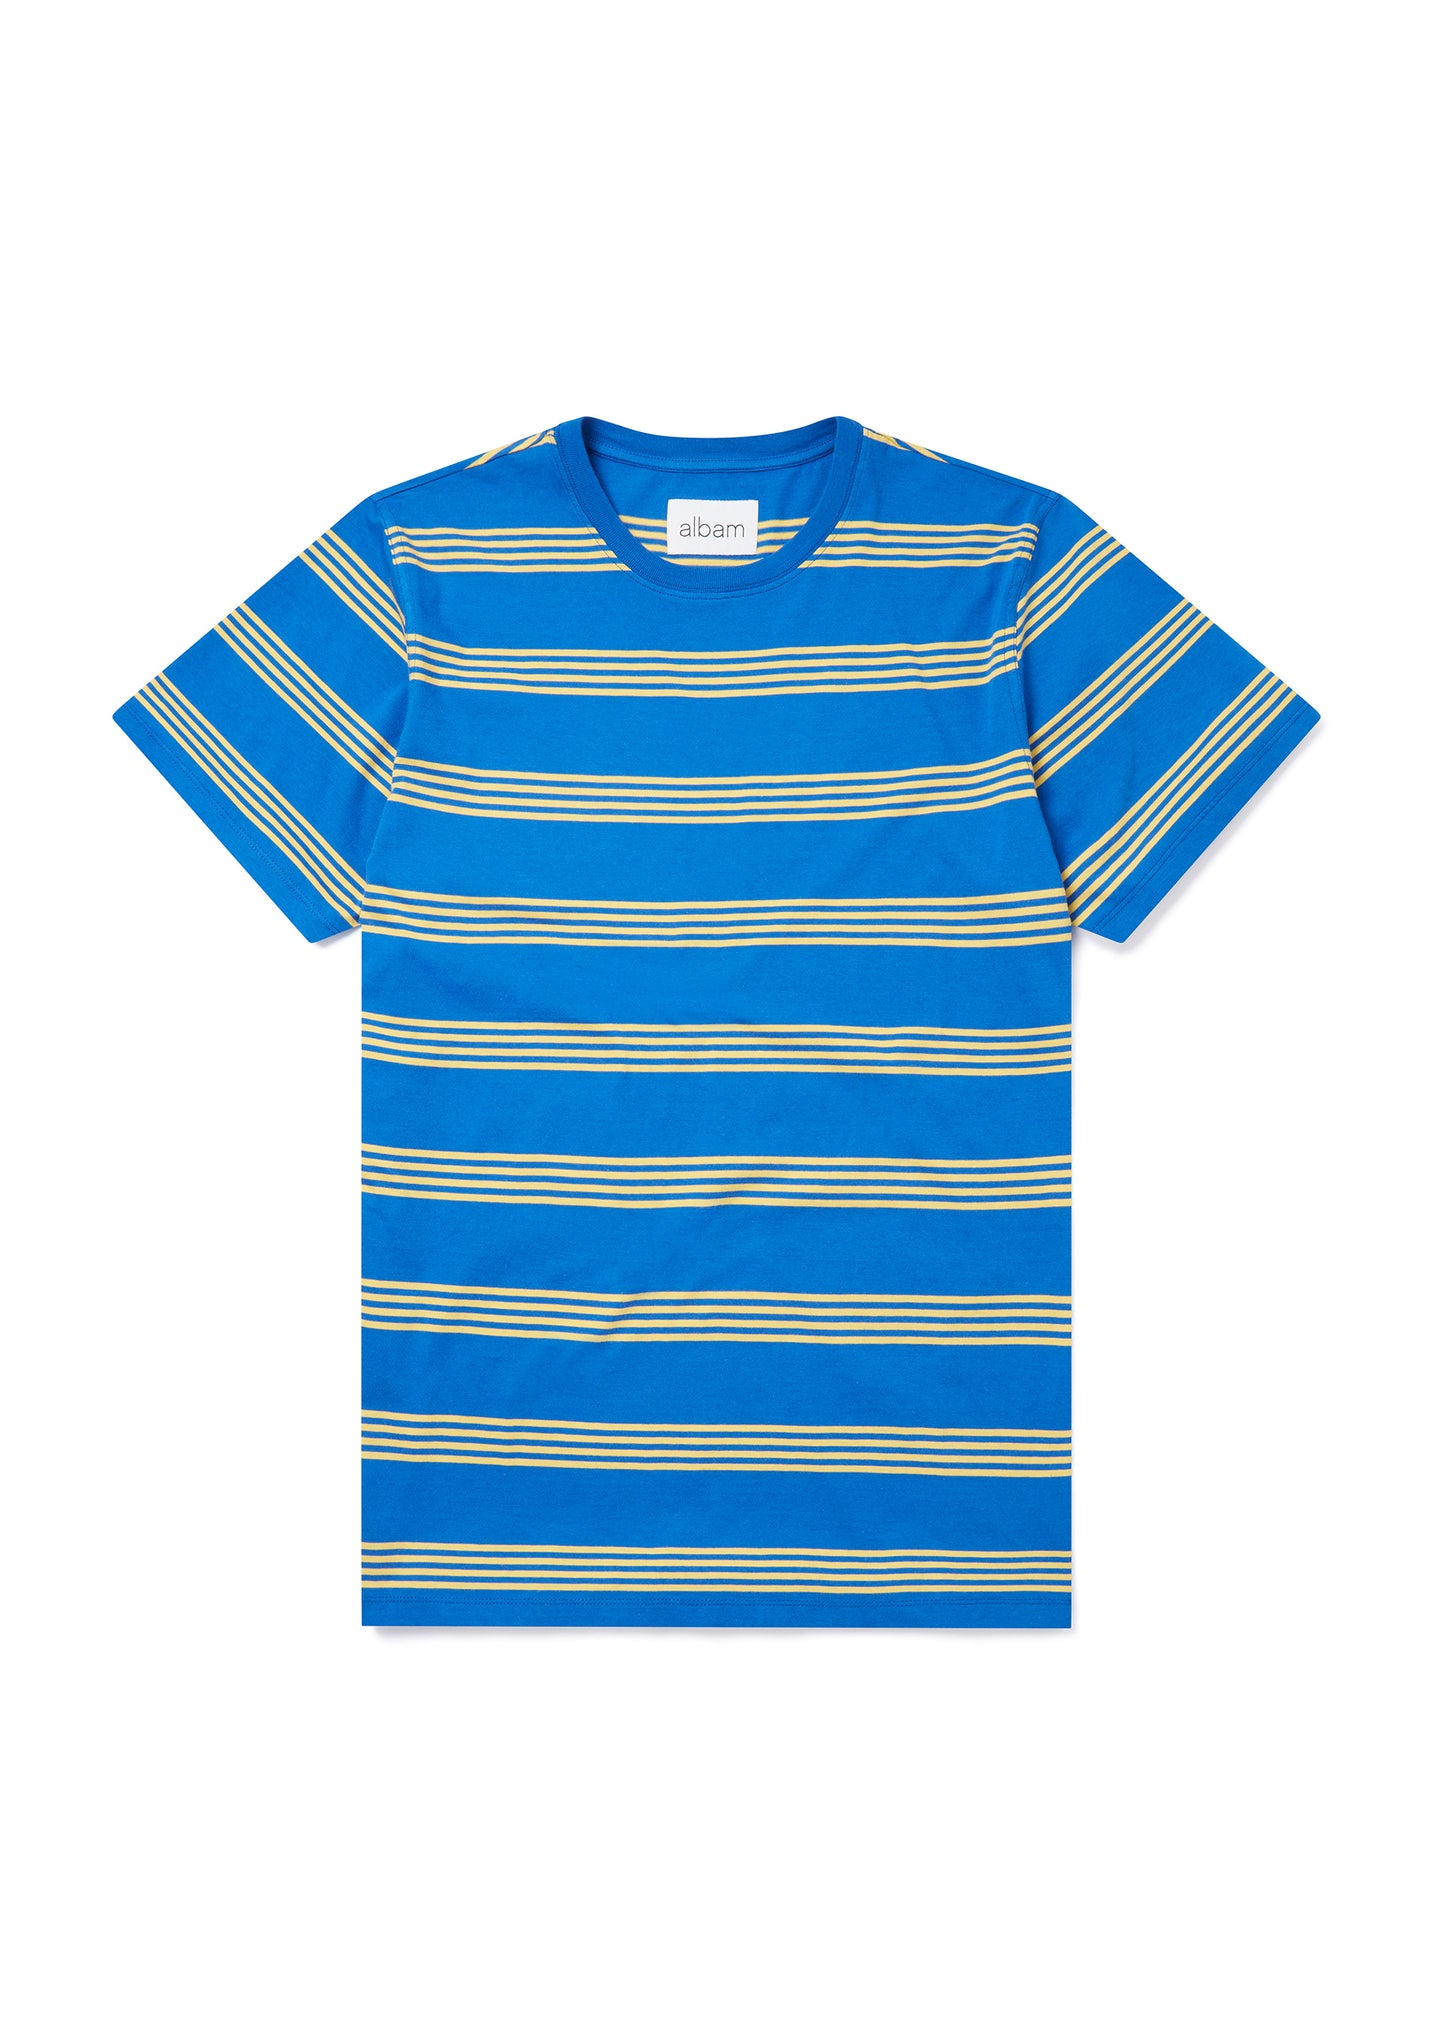 Fine Stripe T-Shirt in Blue/Yellow